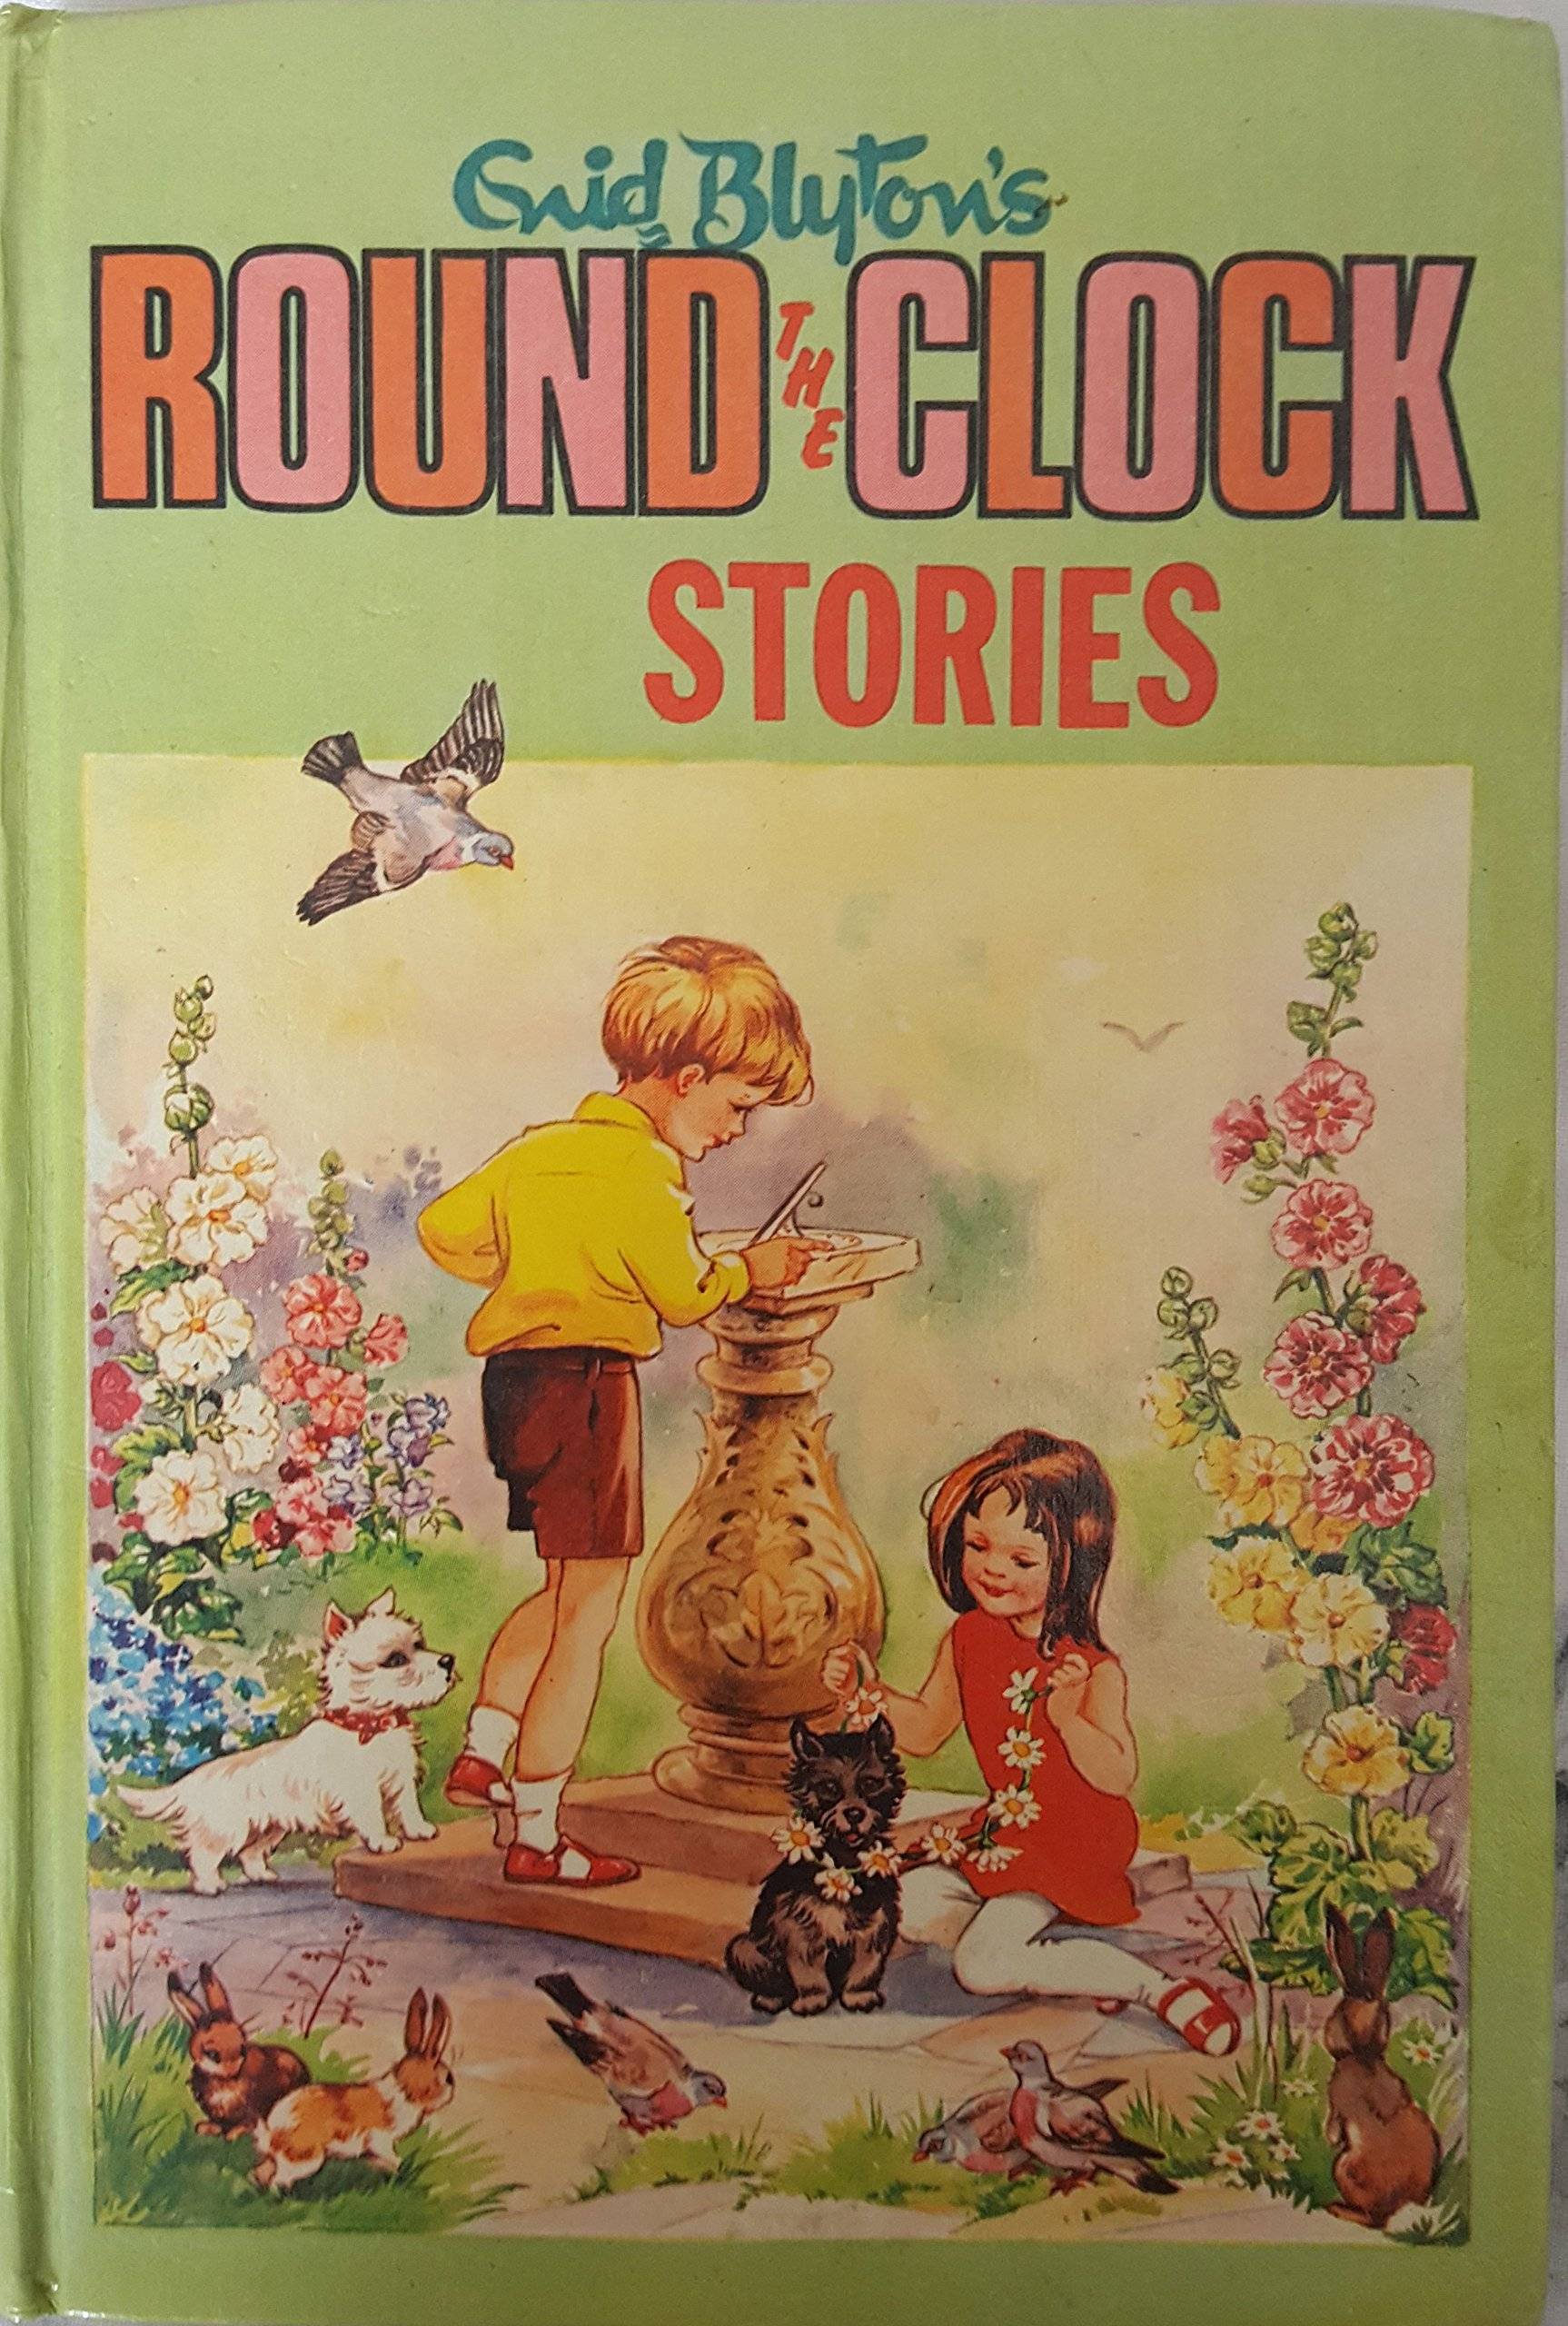 IMG : Round the Clock Stories